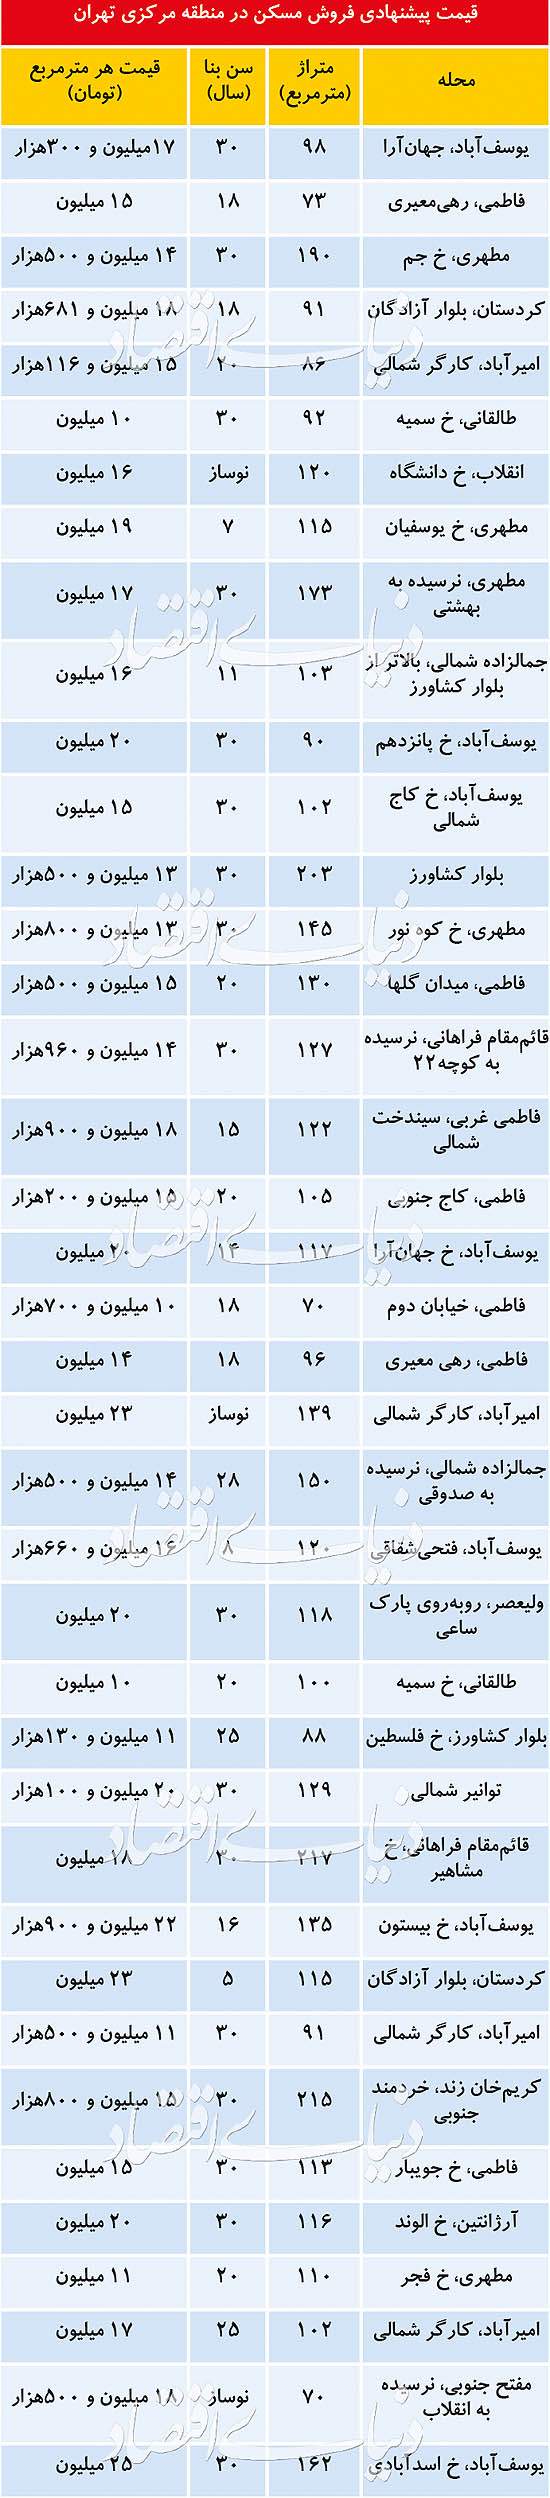 قیمت مسکن در منطقه مرکزی تهران,اخبار اقتصادی,خبرهای اقتصادی,مسکن و عمران